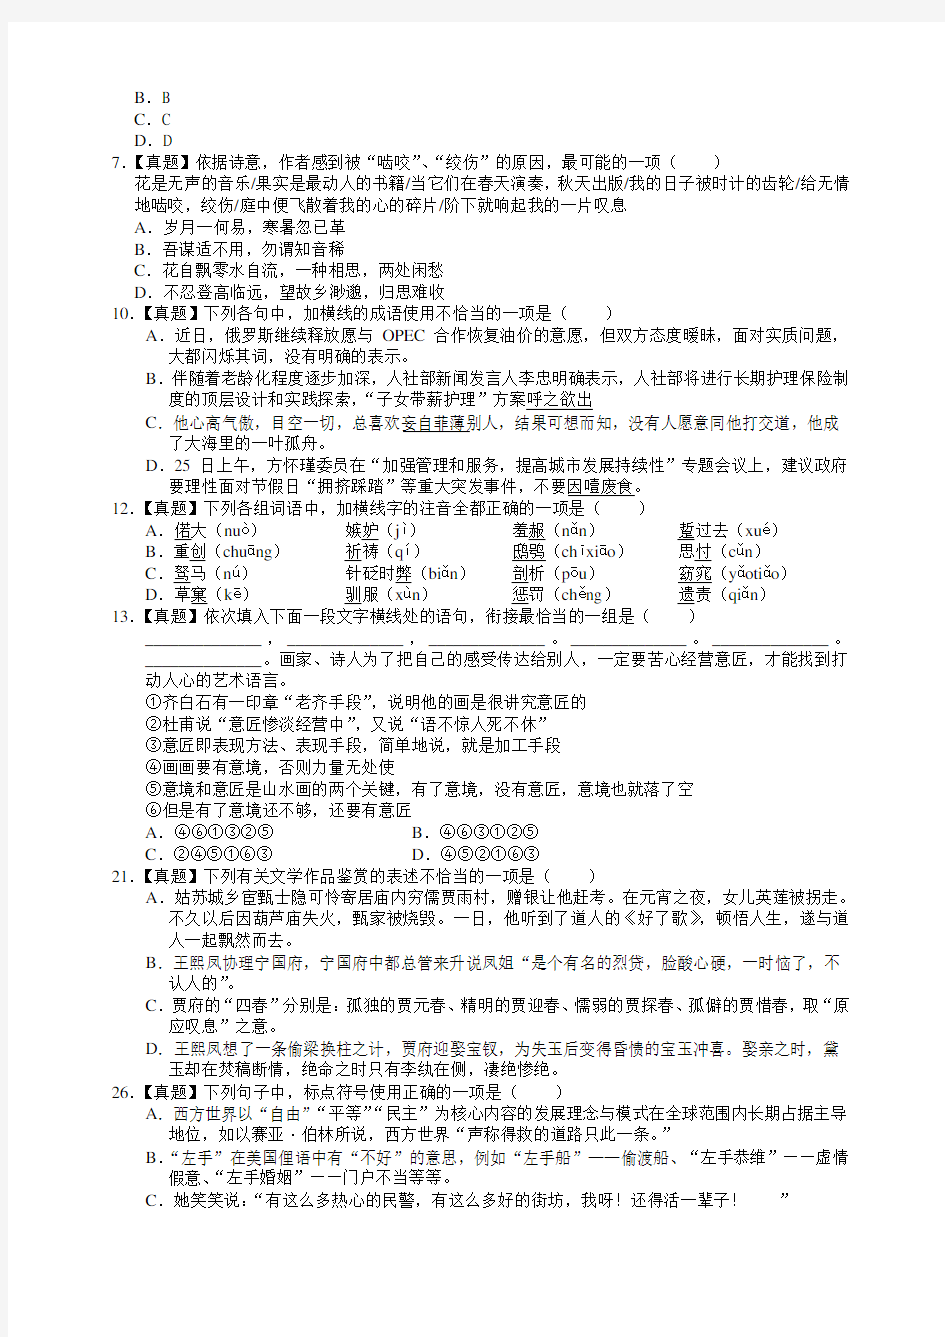 2018年北京大学自主招生试题语文数学英语